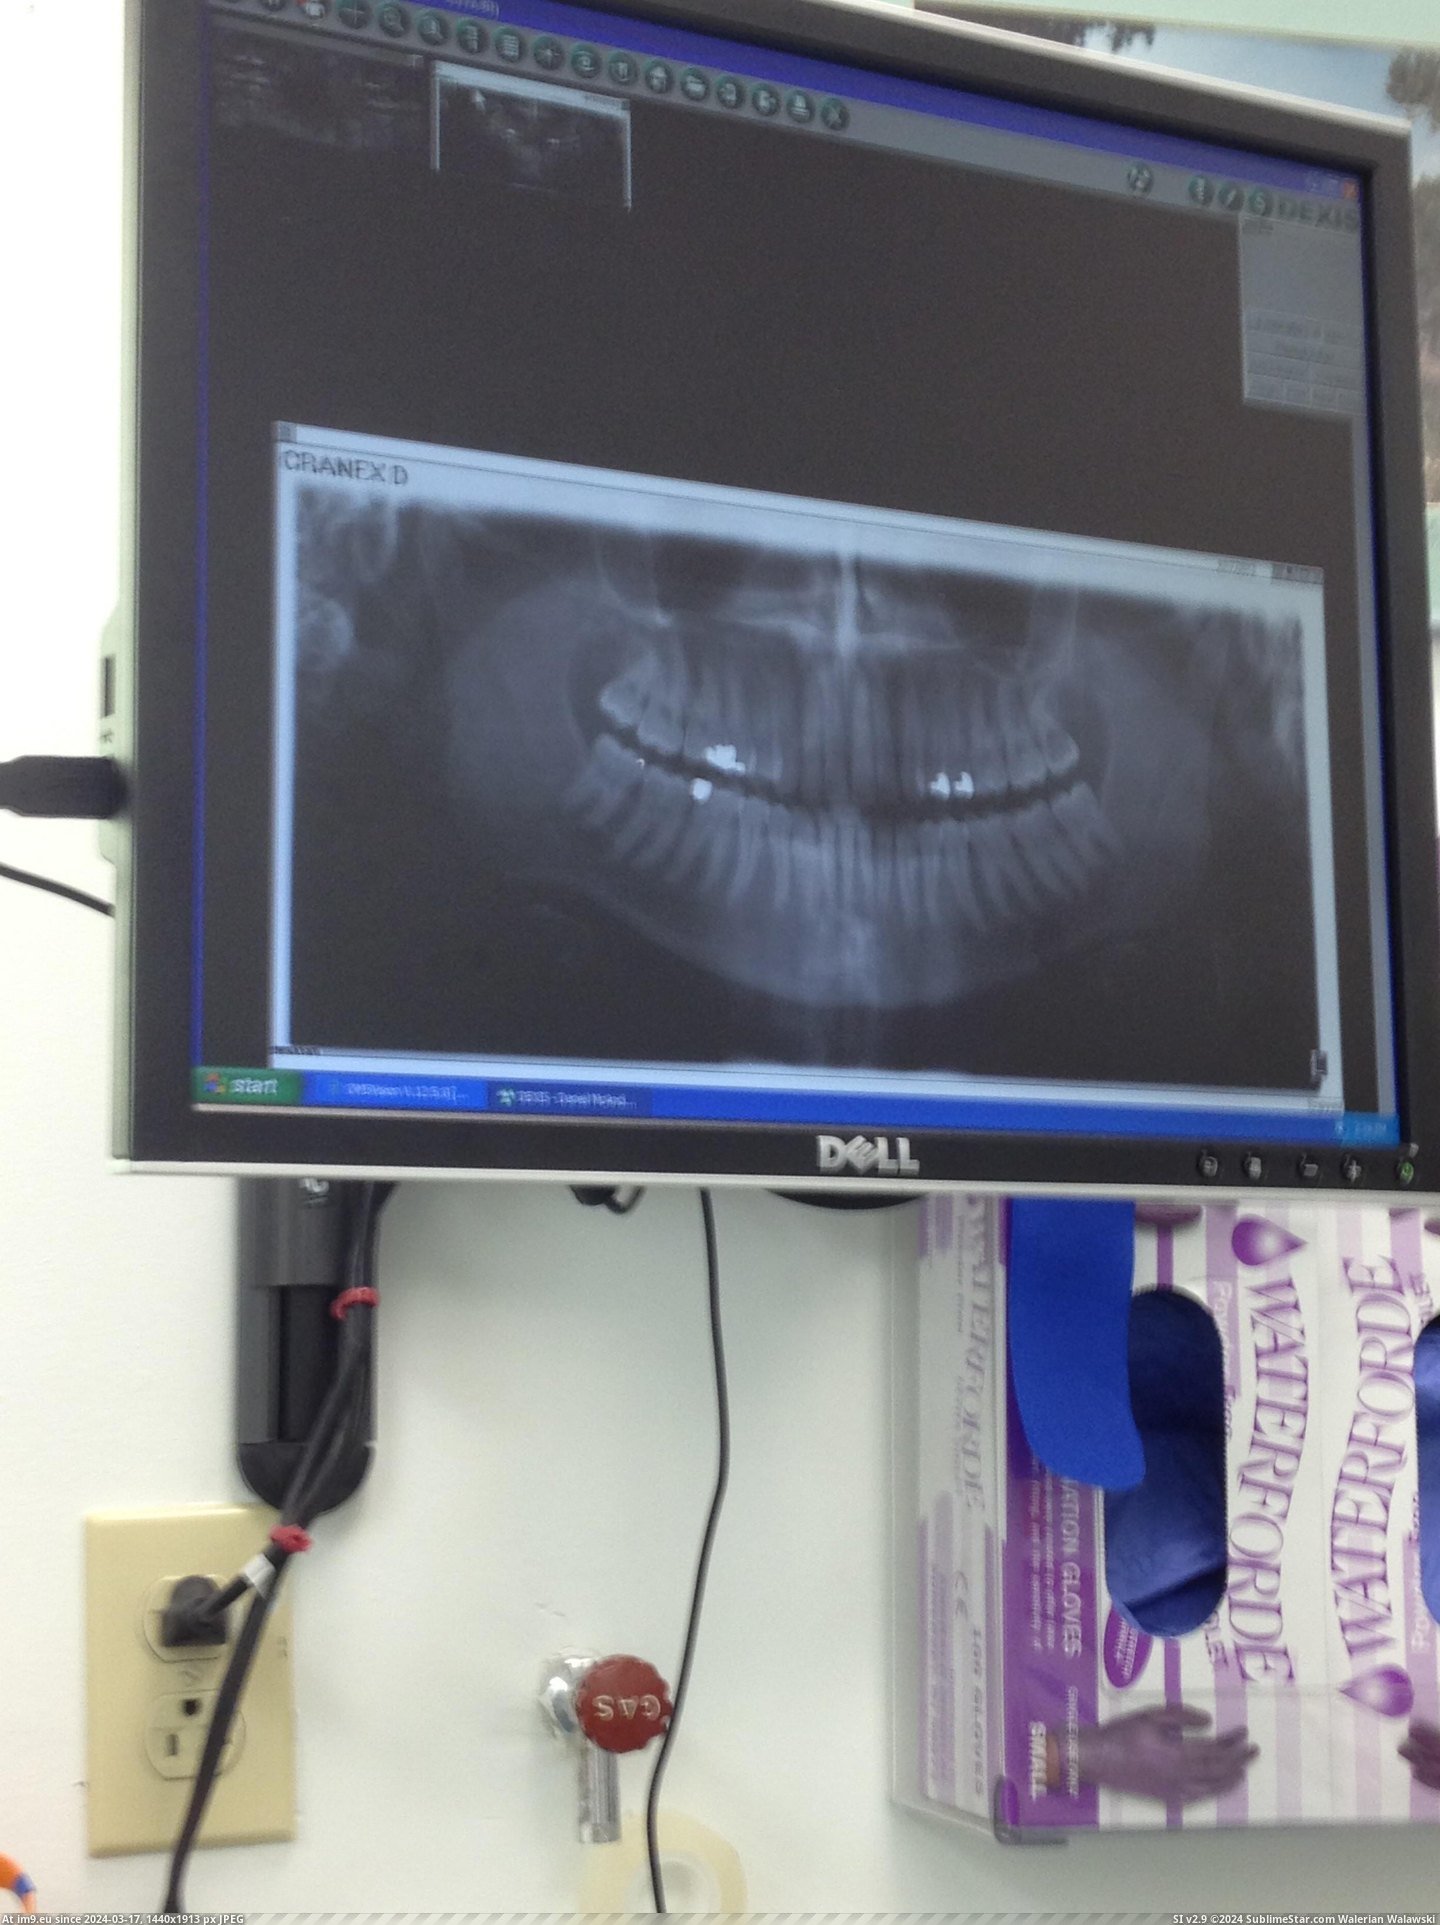 #Wtf #Day #Wrong #Wisdom #Icu #Woke #Surgery #Teeth [Wtf] Wisdom teeth surgery gone wrong. Woke up next day in ICU. 3 Pic. (Bild von album My r/WTF favs))